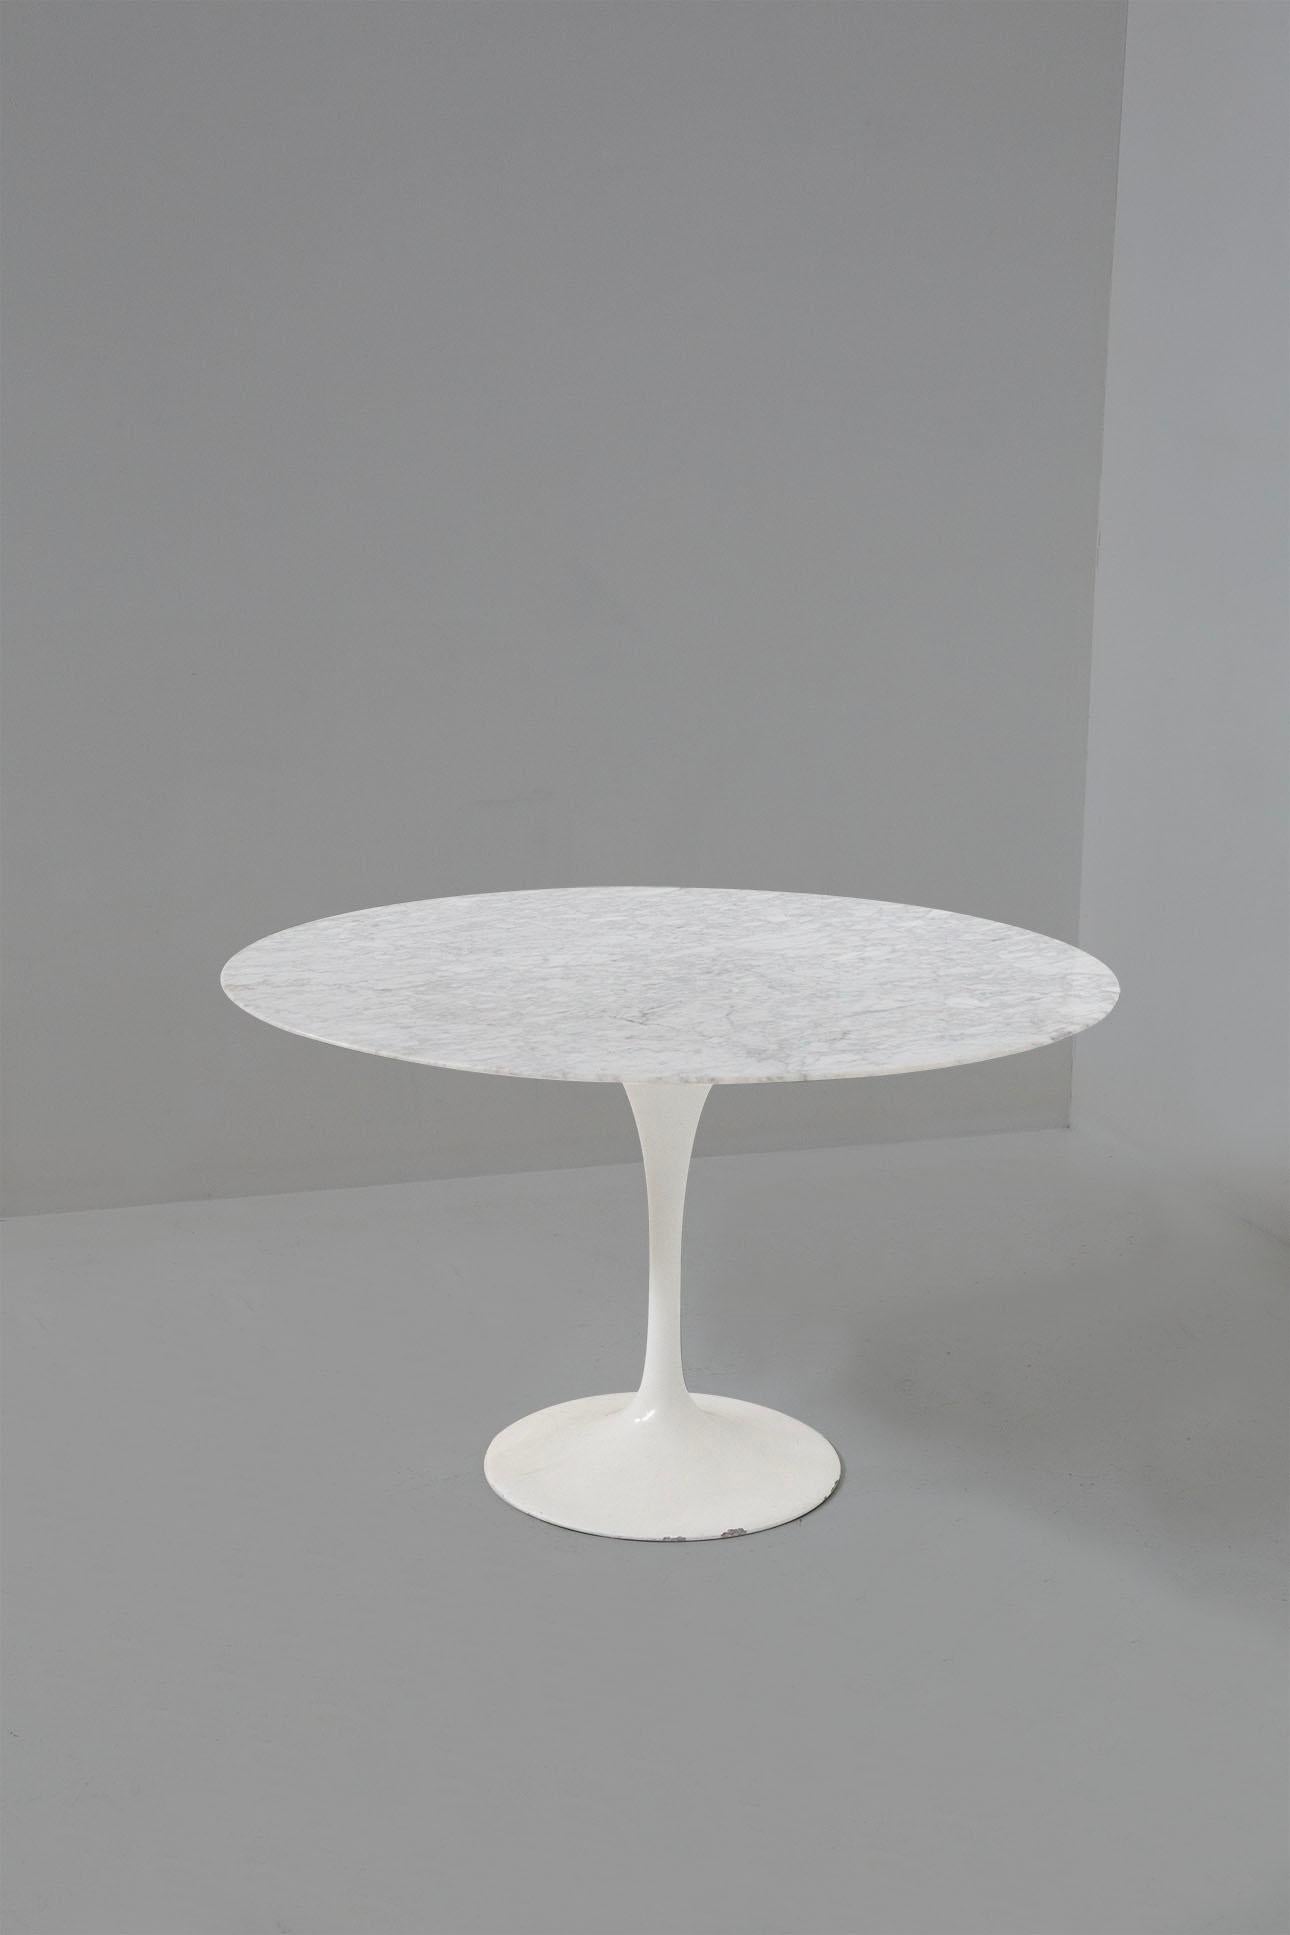 Zeitlose Eleganz, zeitloses Design, weiche und fließende Linien. Marmortisch mit Aluminiumfuß von Eero Saarinen aus den späten 1970er Jahren. Der Tisch hat eine runde Tischplatte aus weißem Marmor mit schwarzen Adern unbekannter Herkunft. Die Basis